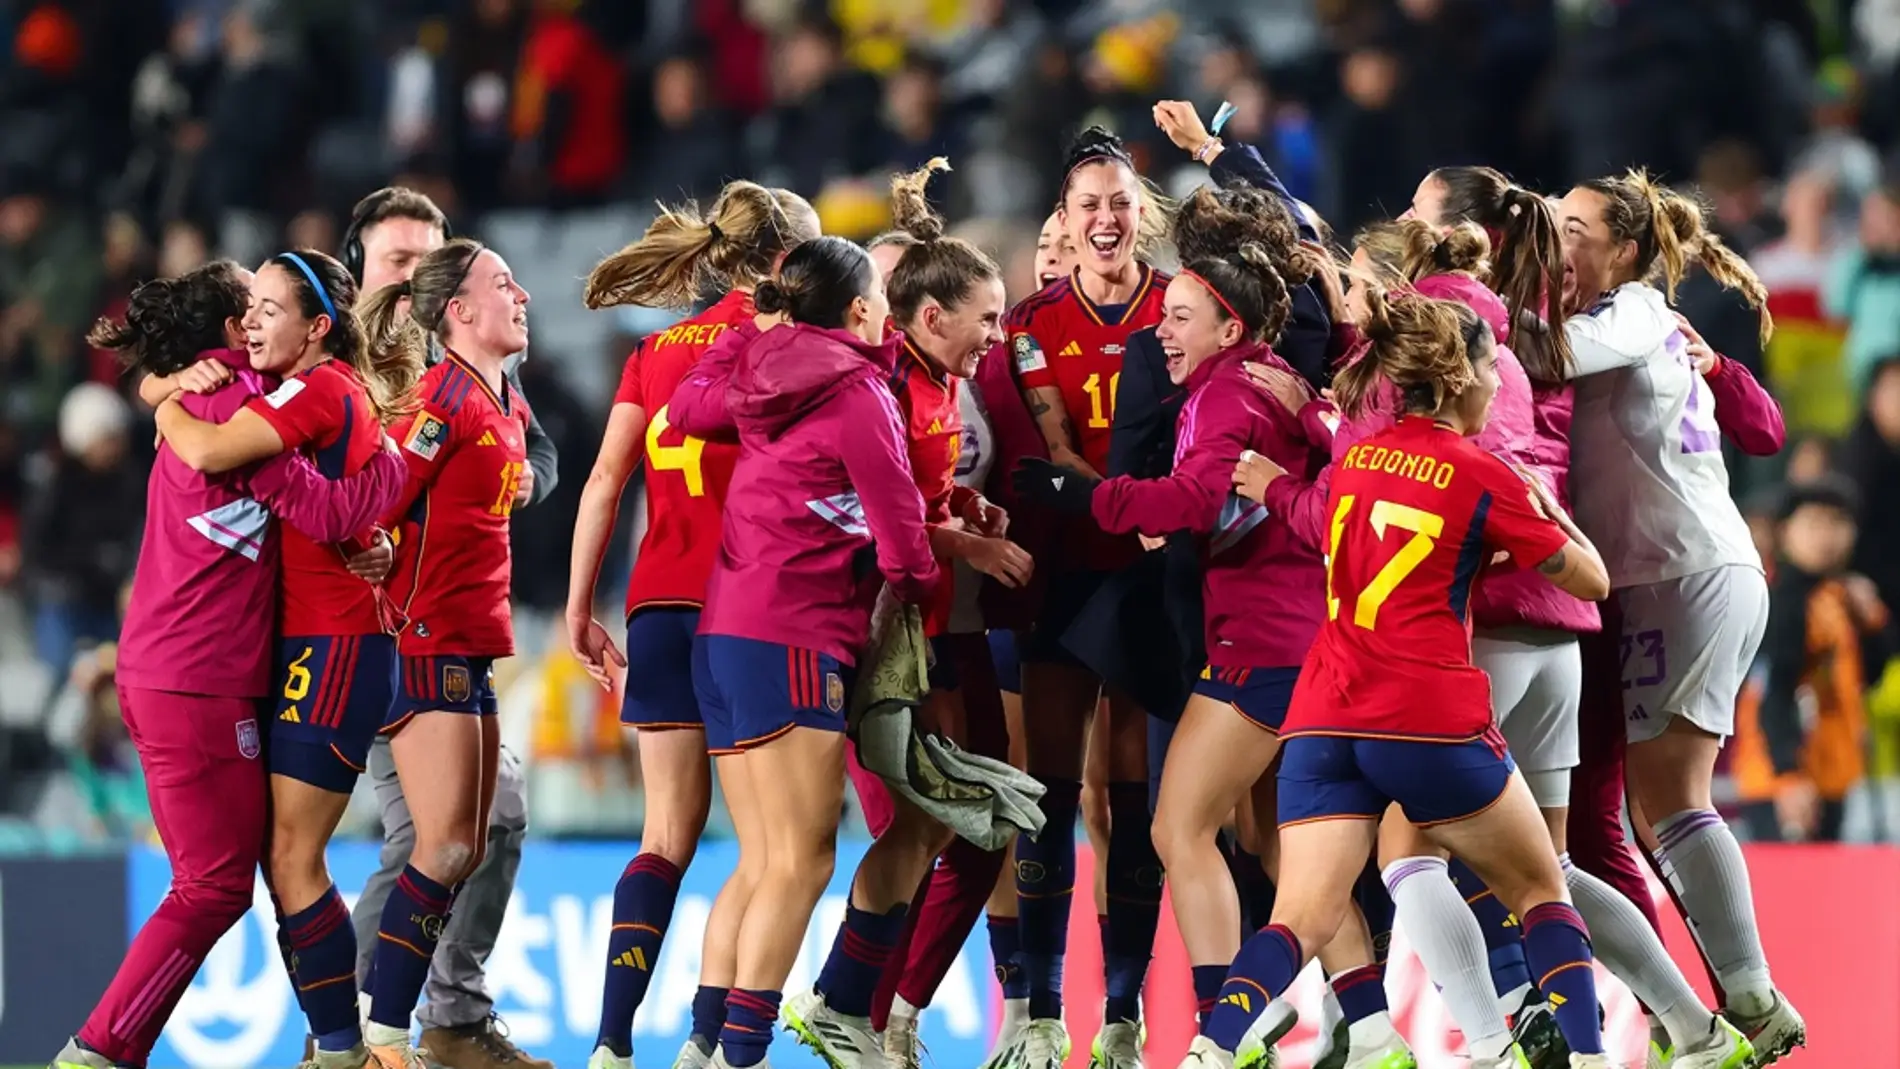 La selección femenina de fútbol hace historia y disputará por primera vez una final de mundial